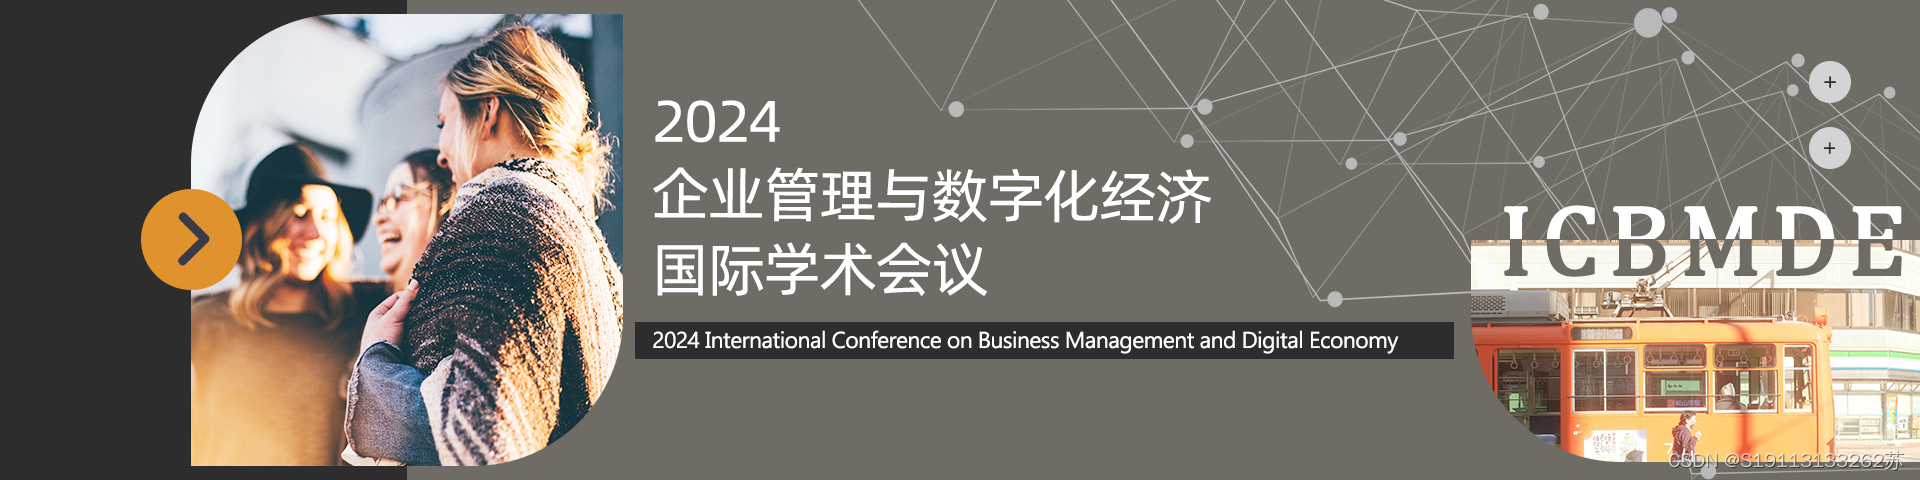 【检索稳定|火爆征稿中】2024年企业管理与数字化经济国际学术会议（ICBMDE 2024）